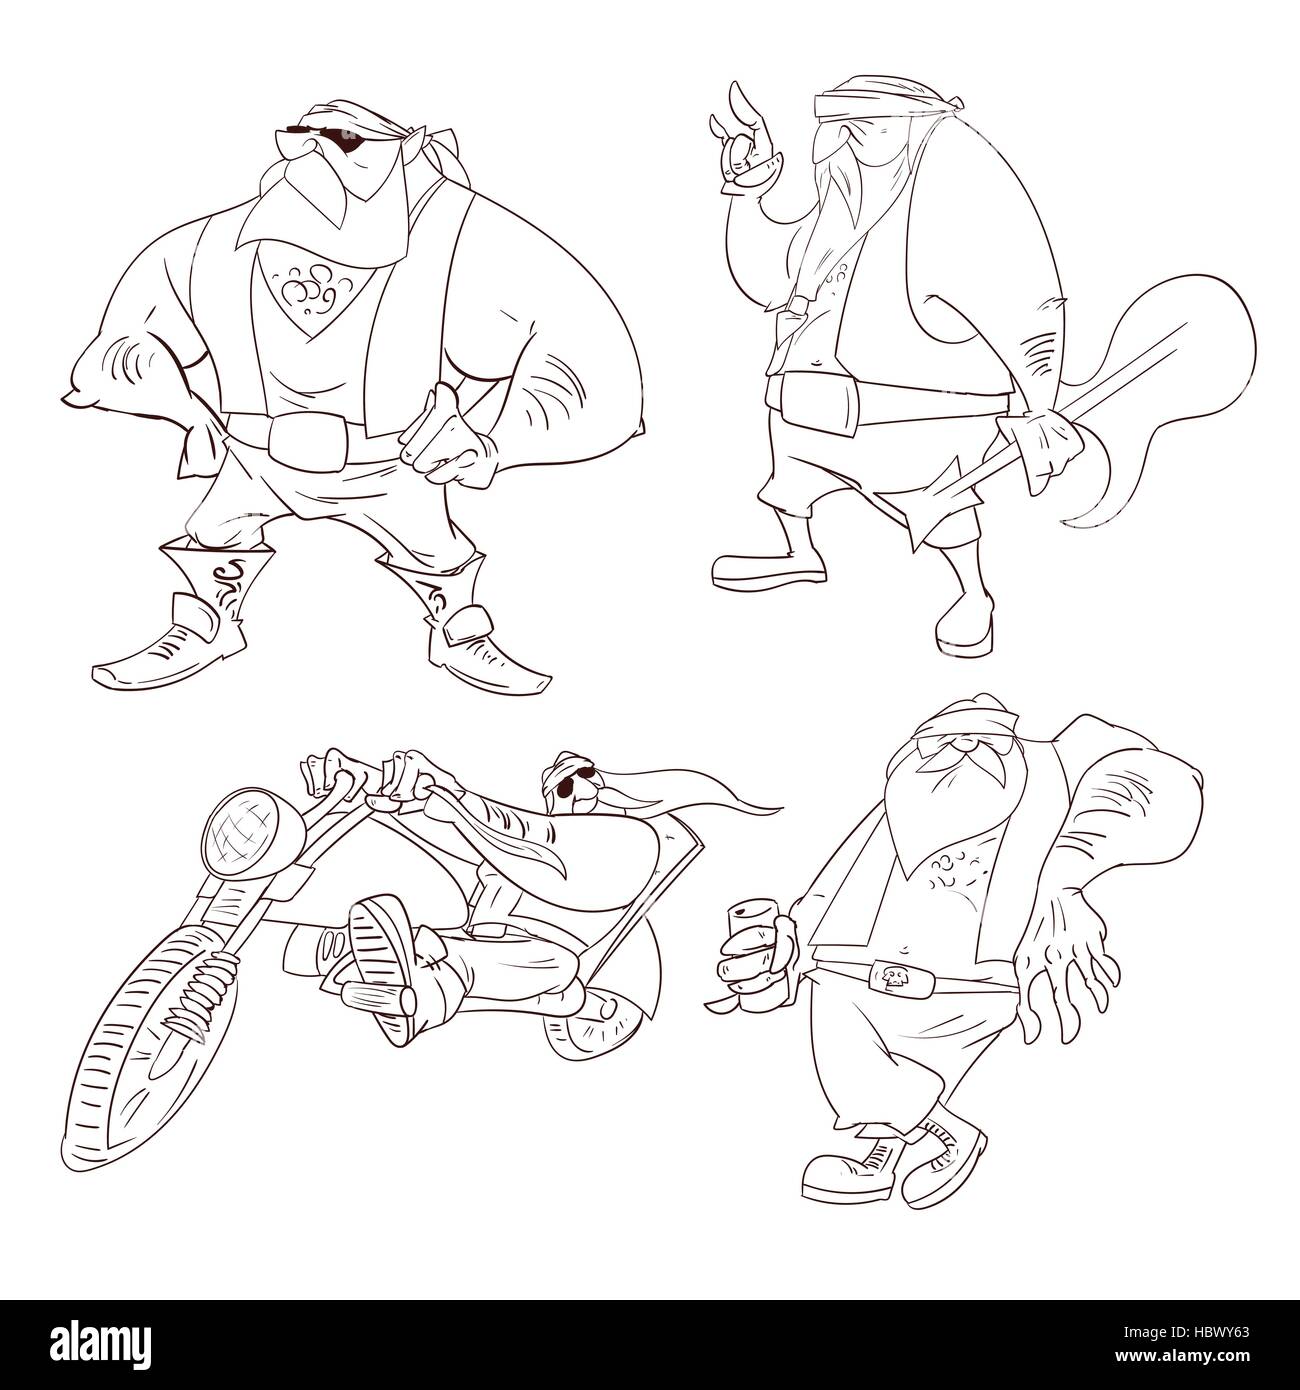 Strichzeichnungen Vektor-Illustration der Cartoon Rocker, Biker oder Bande Mitglied Stock Vektor